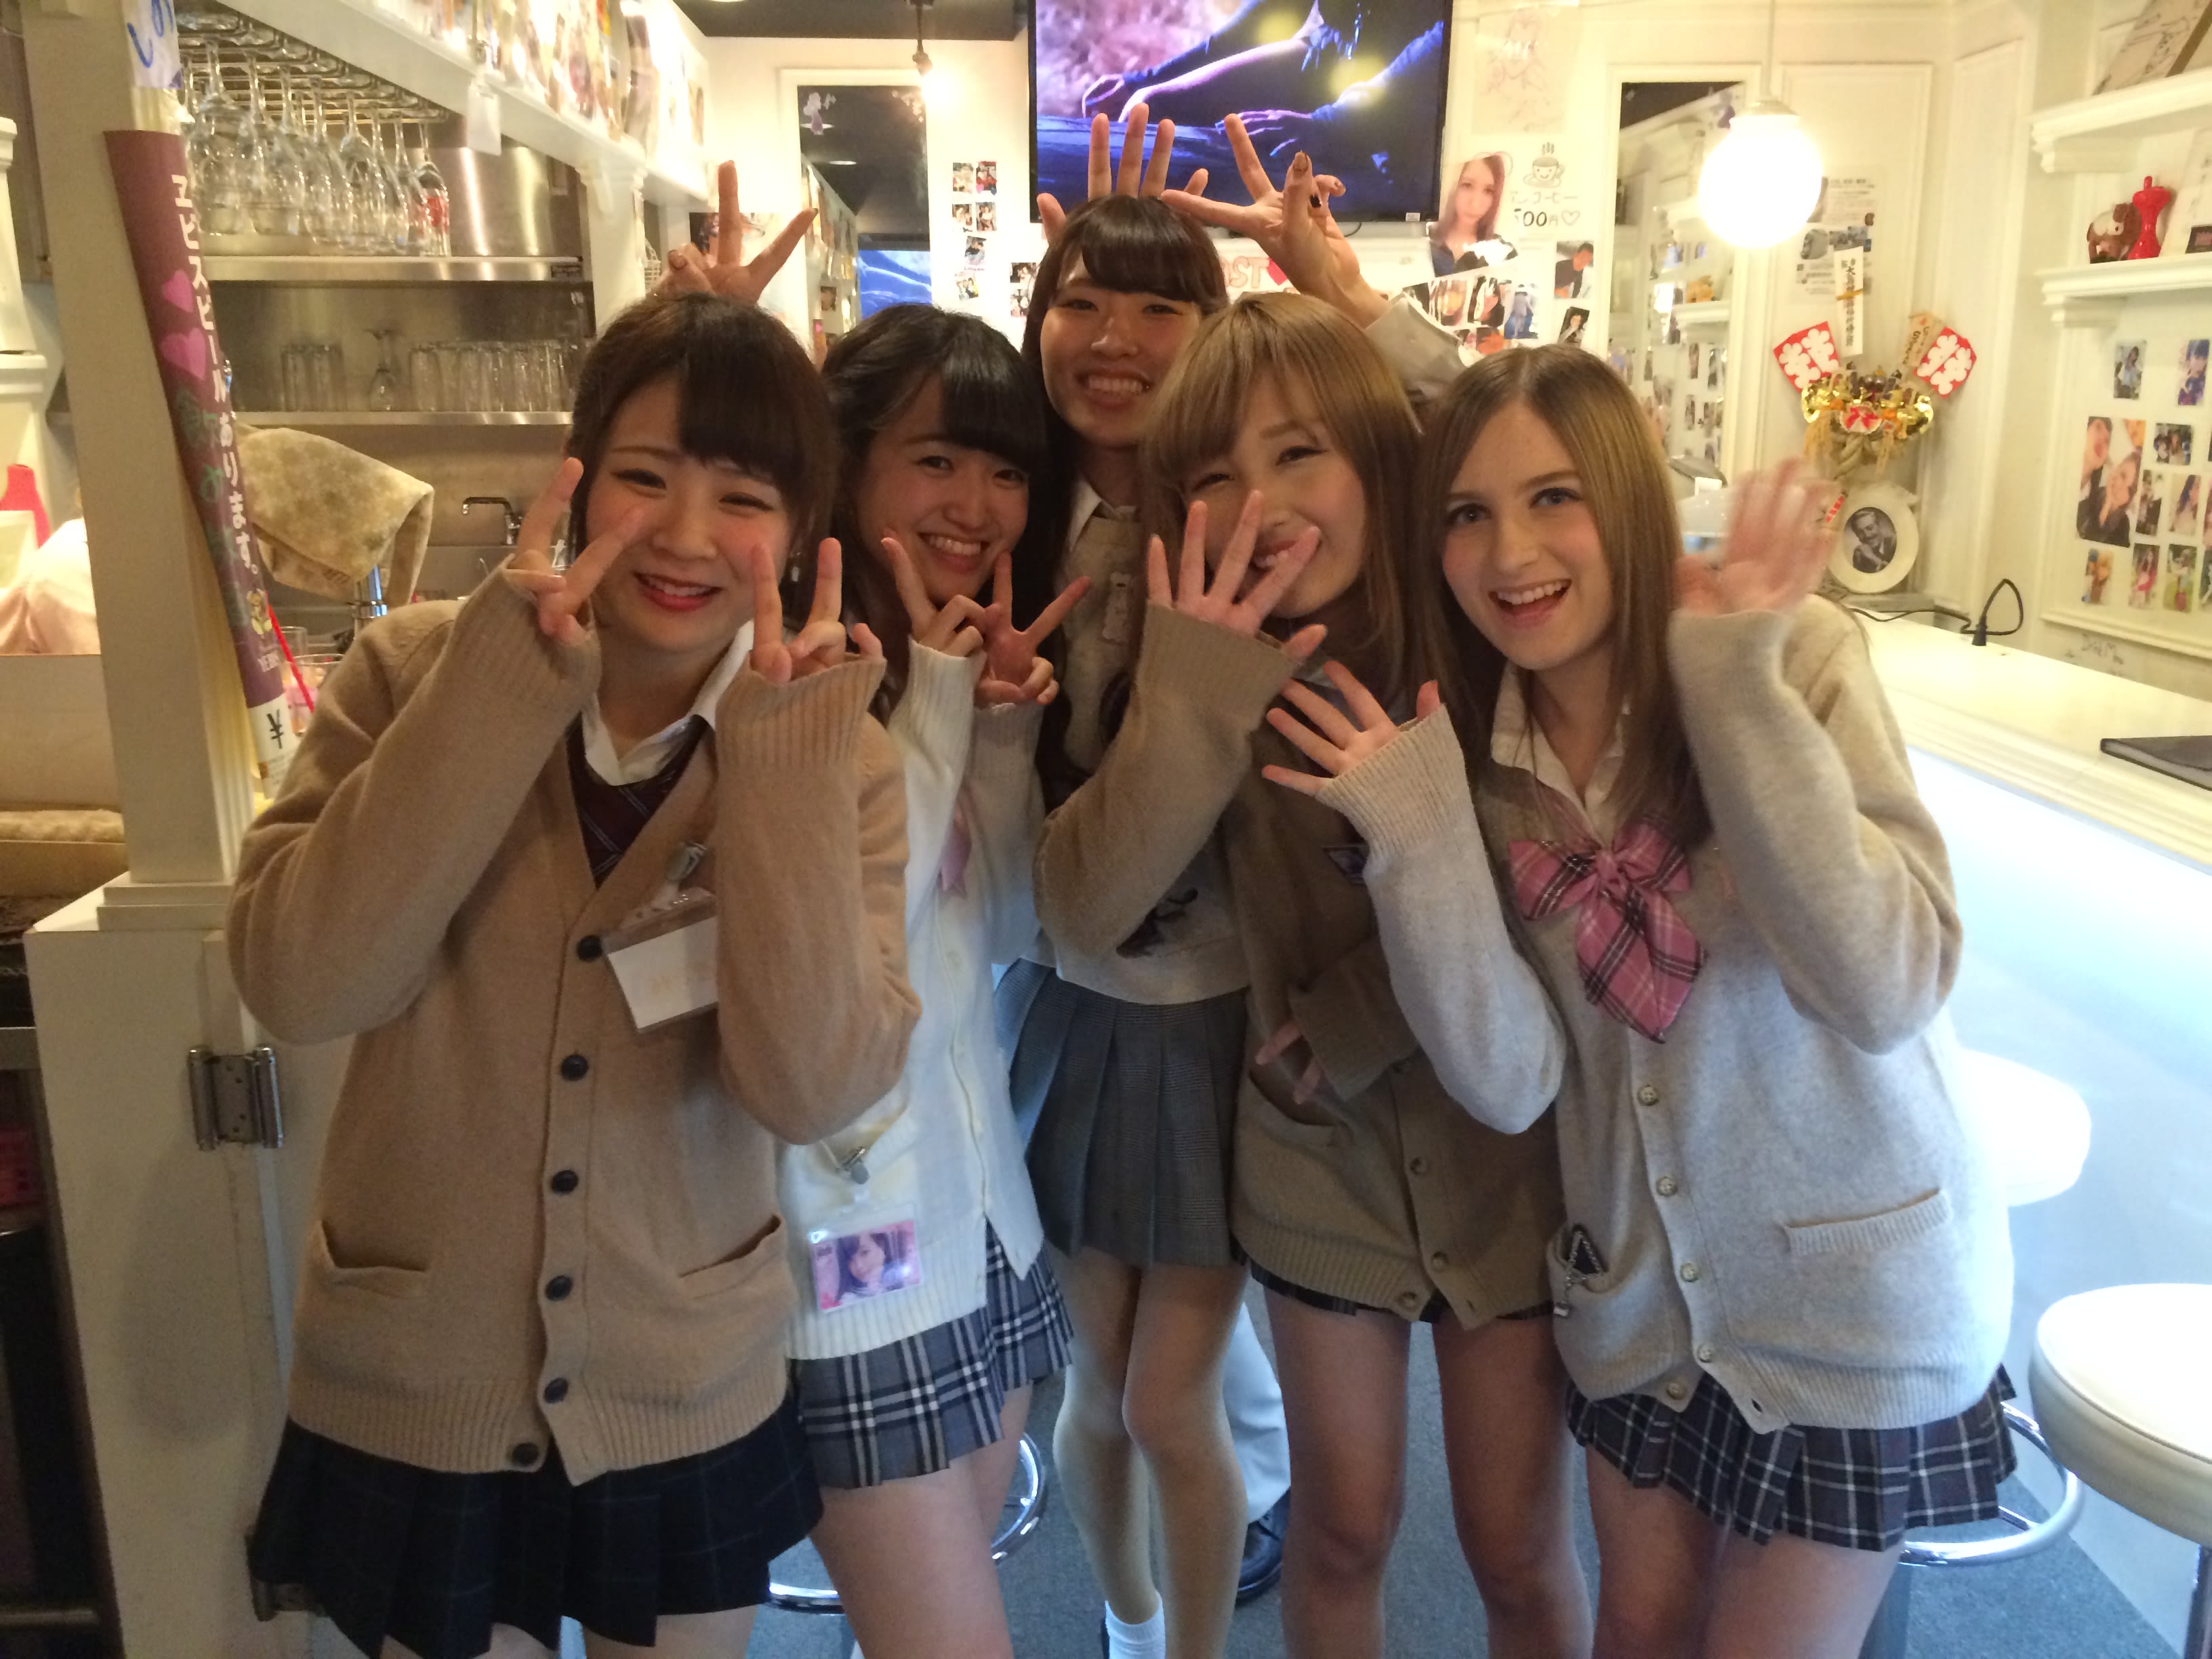 School Girl Six Marthi - Japan school girl culture: The dark truth | CNN